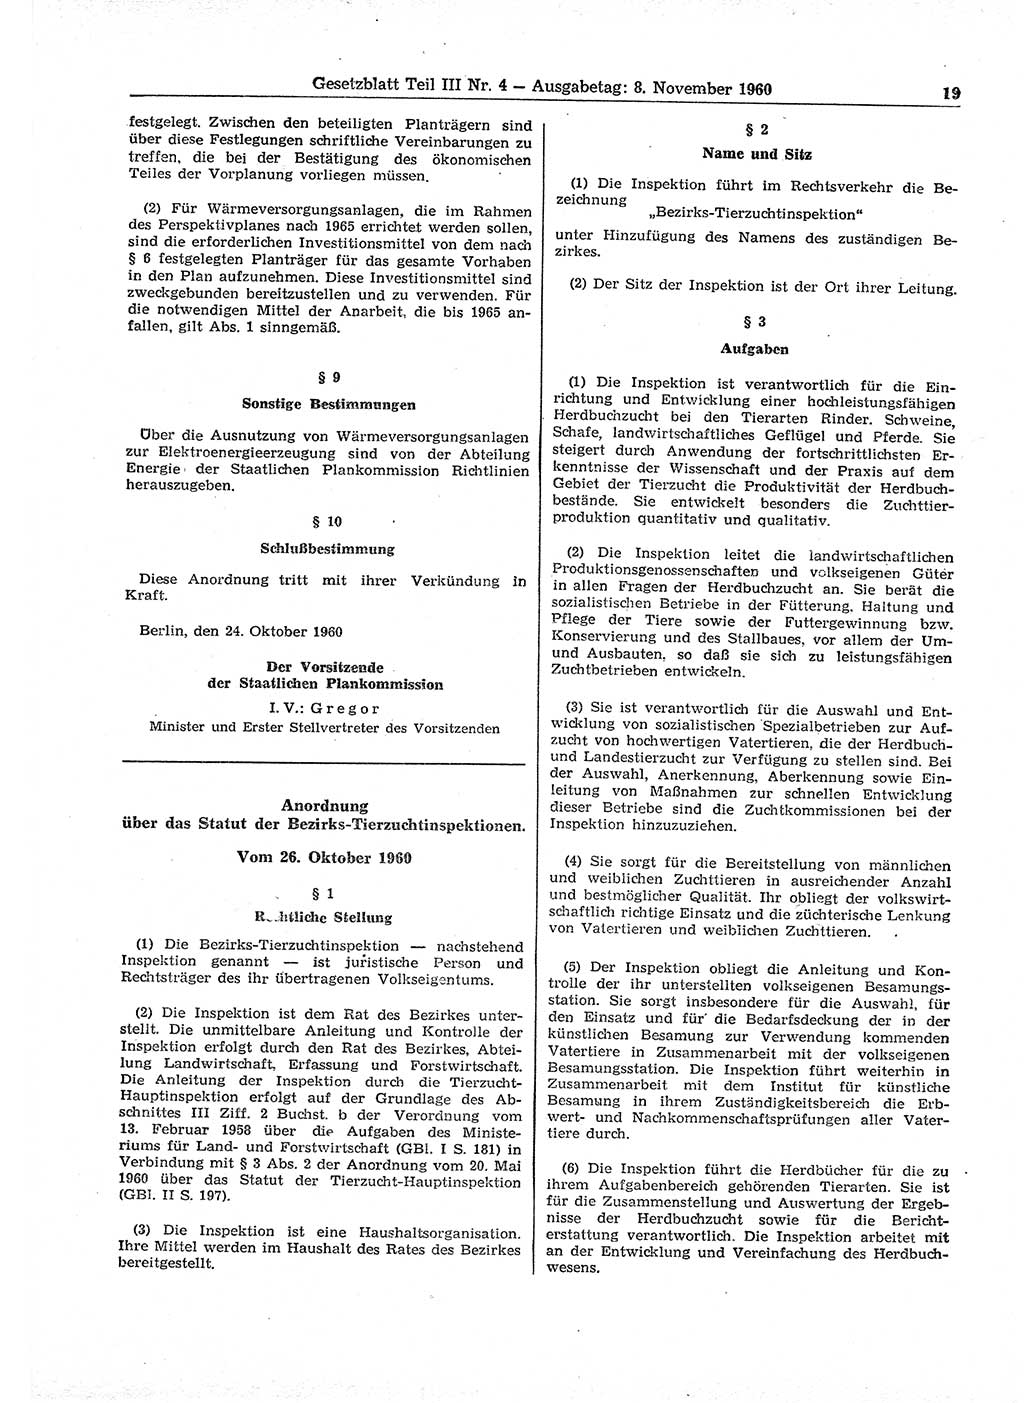 Gesetzblatt (GBl.) der Deutschen Demokratischen Republik (DDR) Teil ⅠⅠⅠ 1960, Seite 19 (GBl. DDR ⅠⅠⅠ 1960, S. 19)